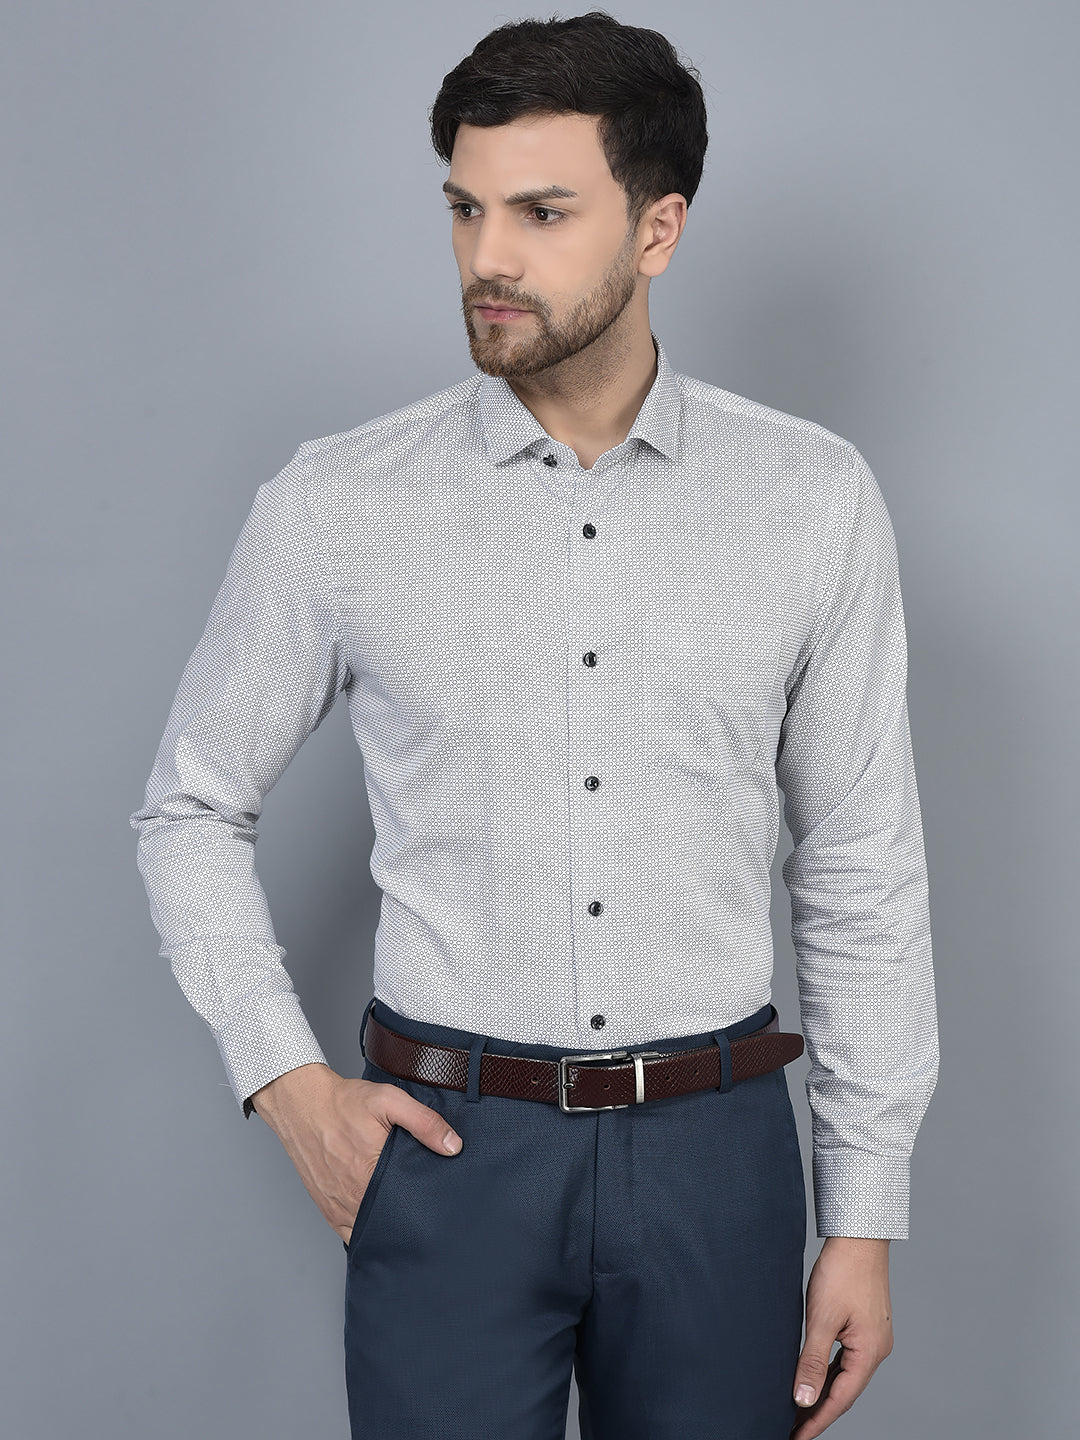 Cobb Grey Printed Slim Fit Formal Shirt Grey